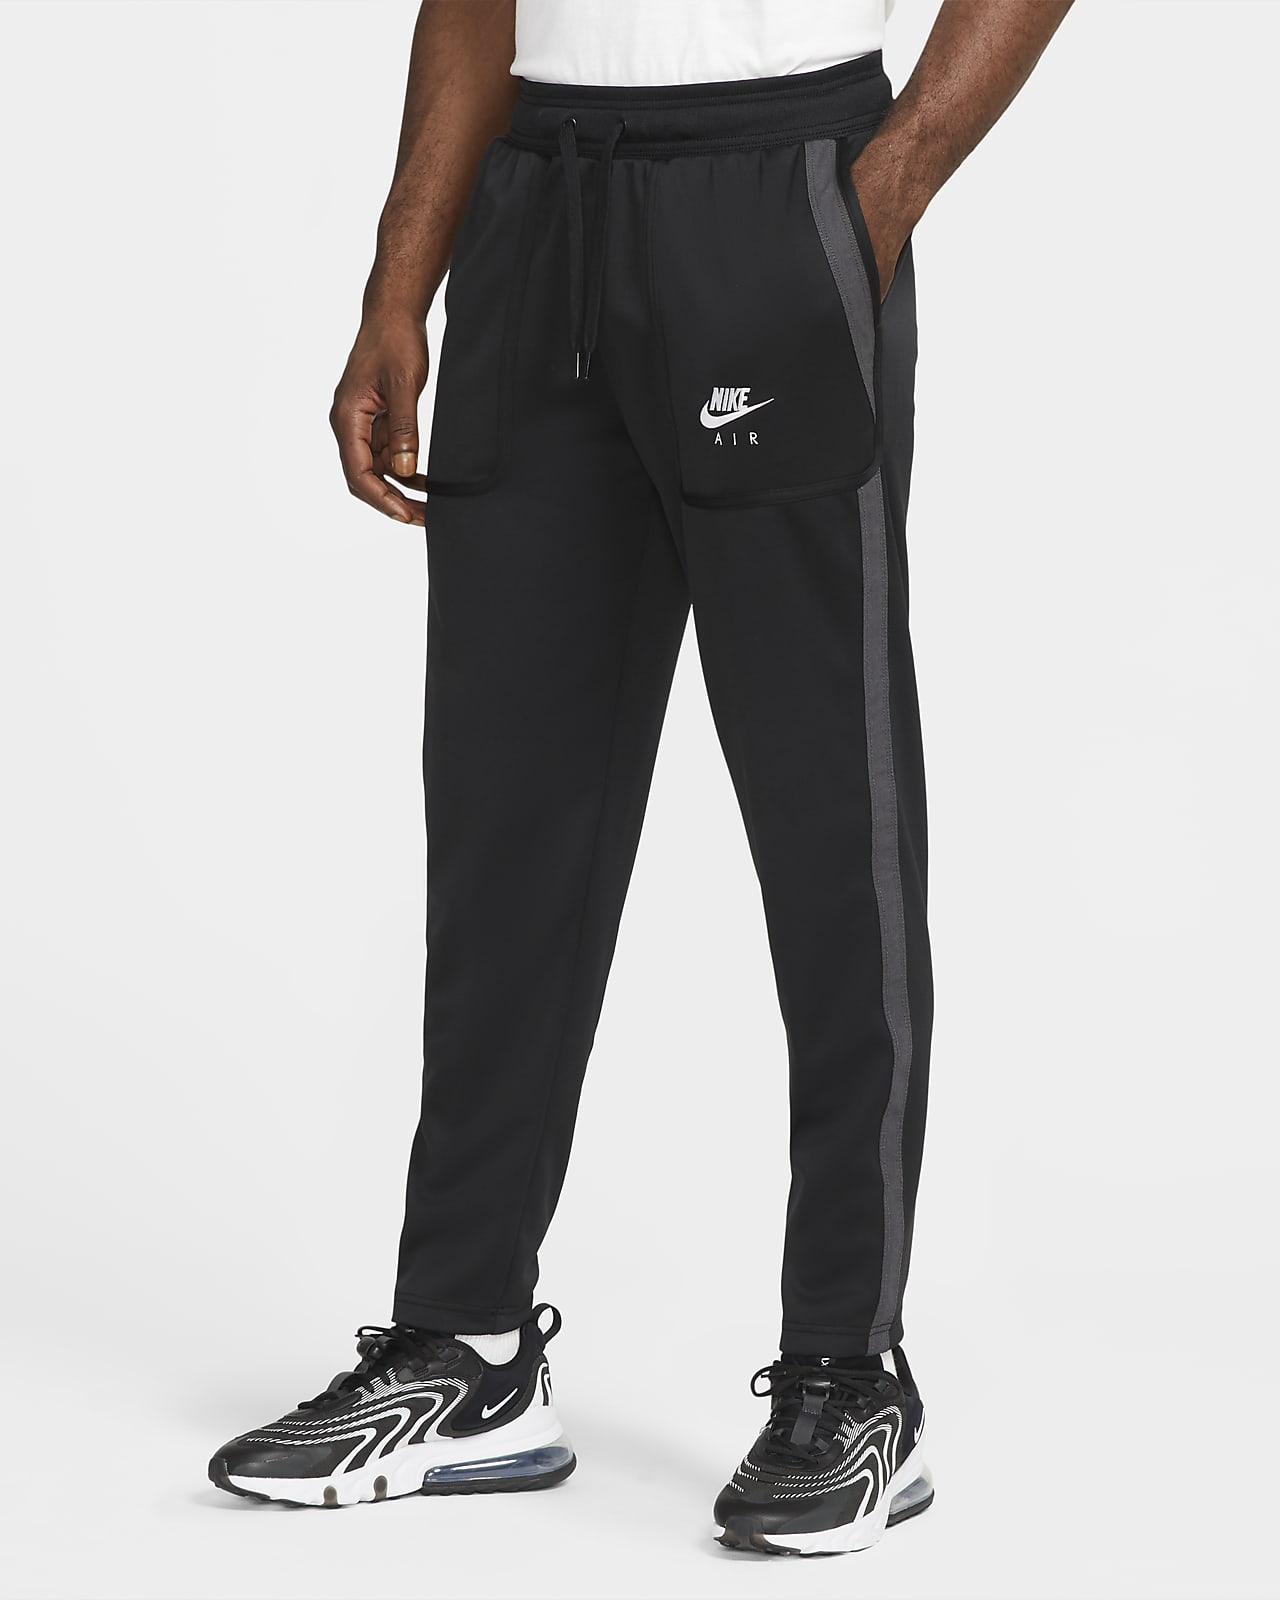 Nike Air Men's Trousers. Nike CA